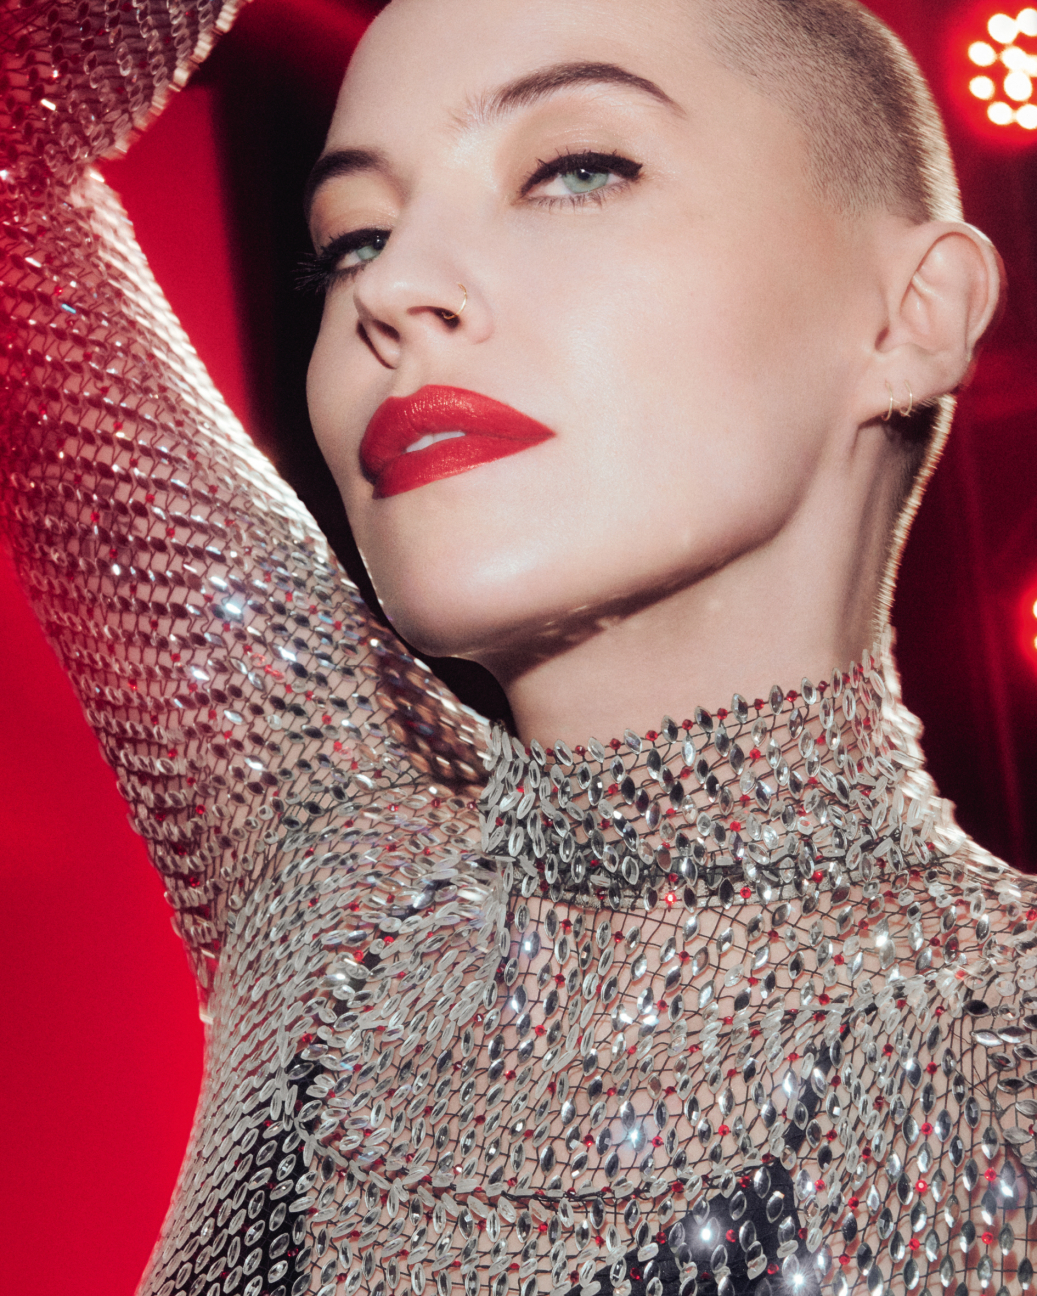 Red lipstick. Louis Vuitton. Makeup art